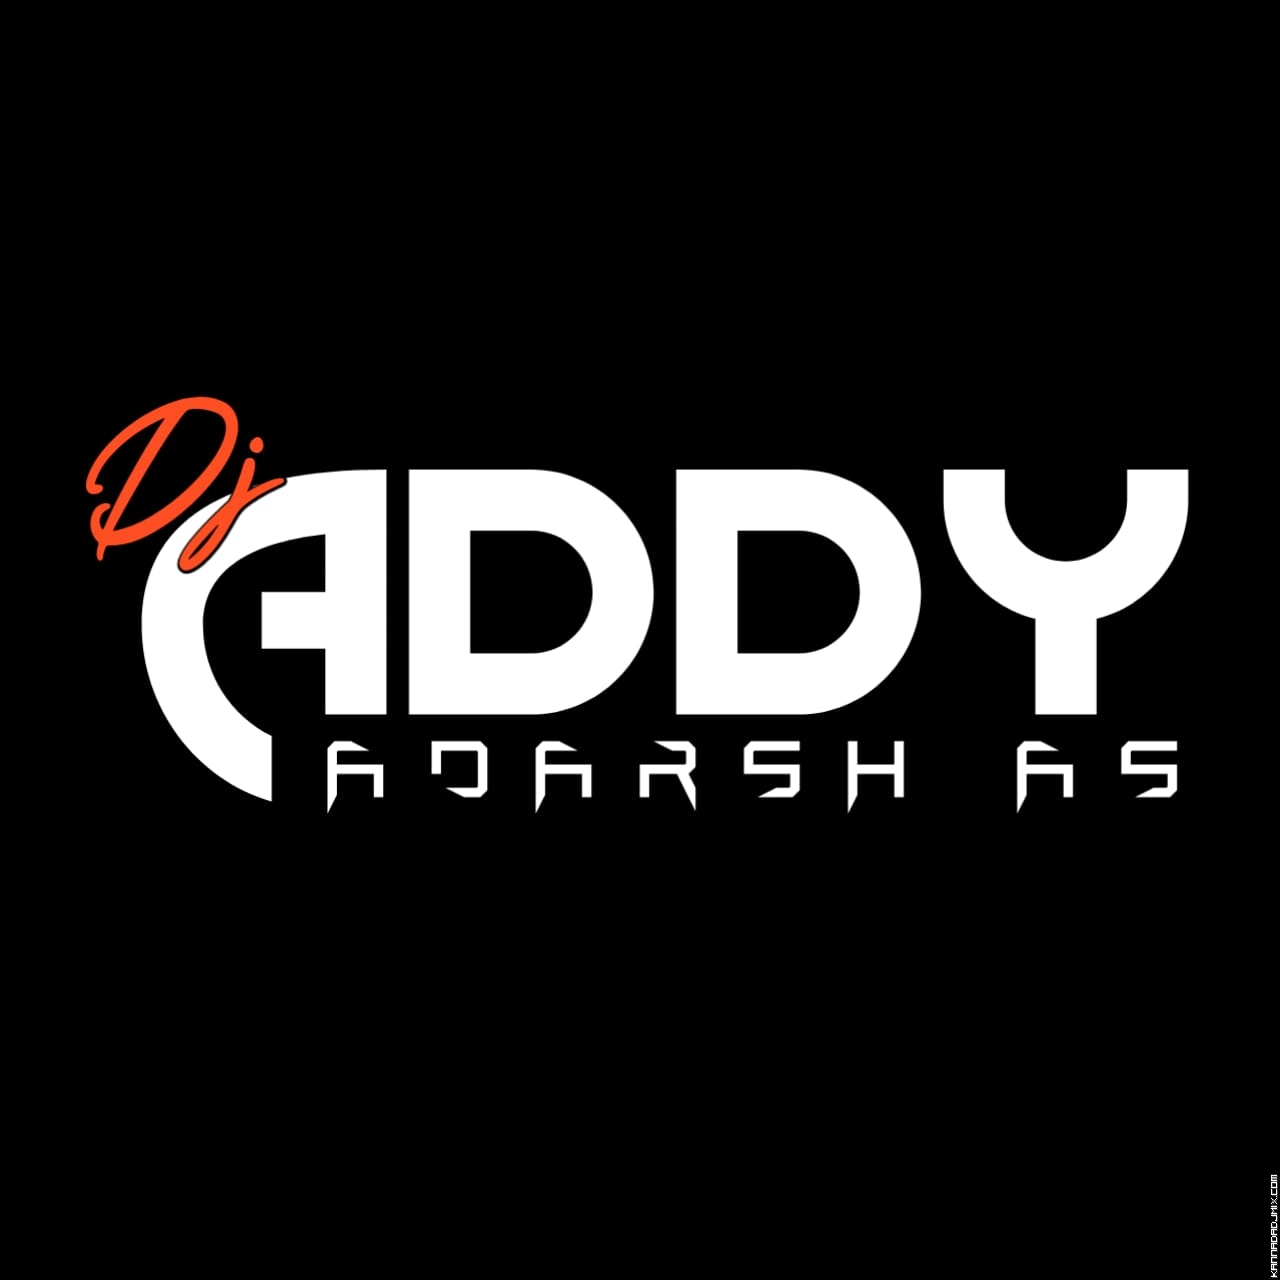 November 1 DJ ADDY x DJ ADARSH AS BGM Vol. 25.zip